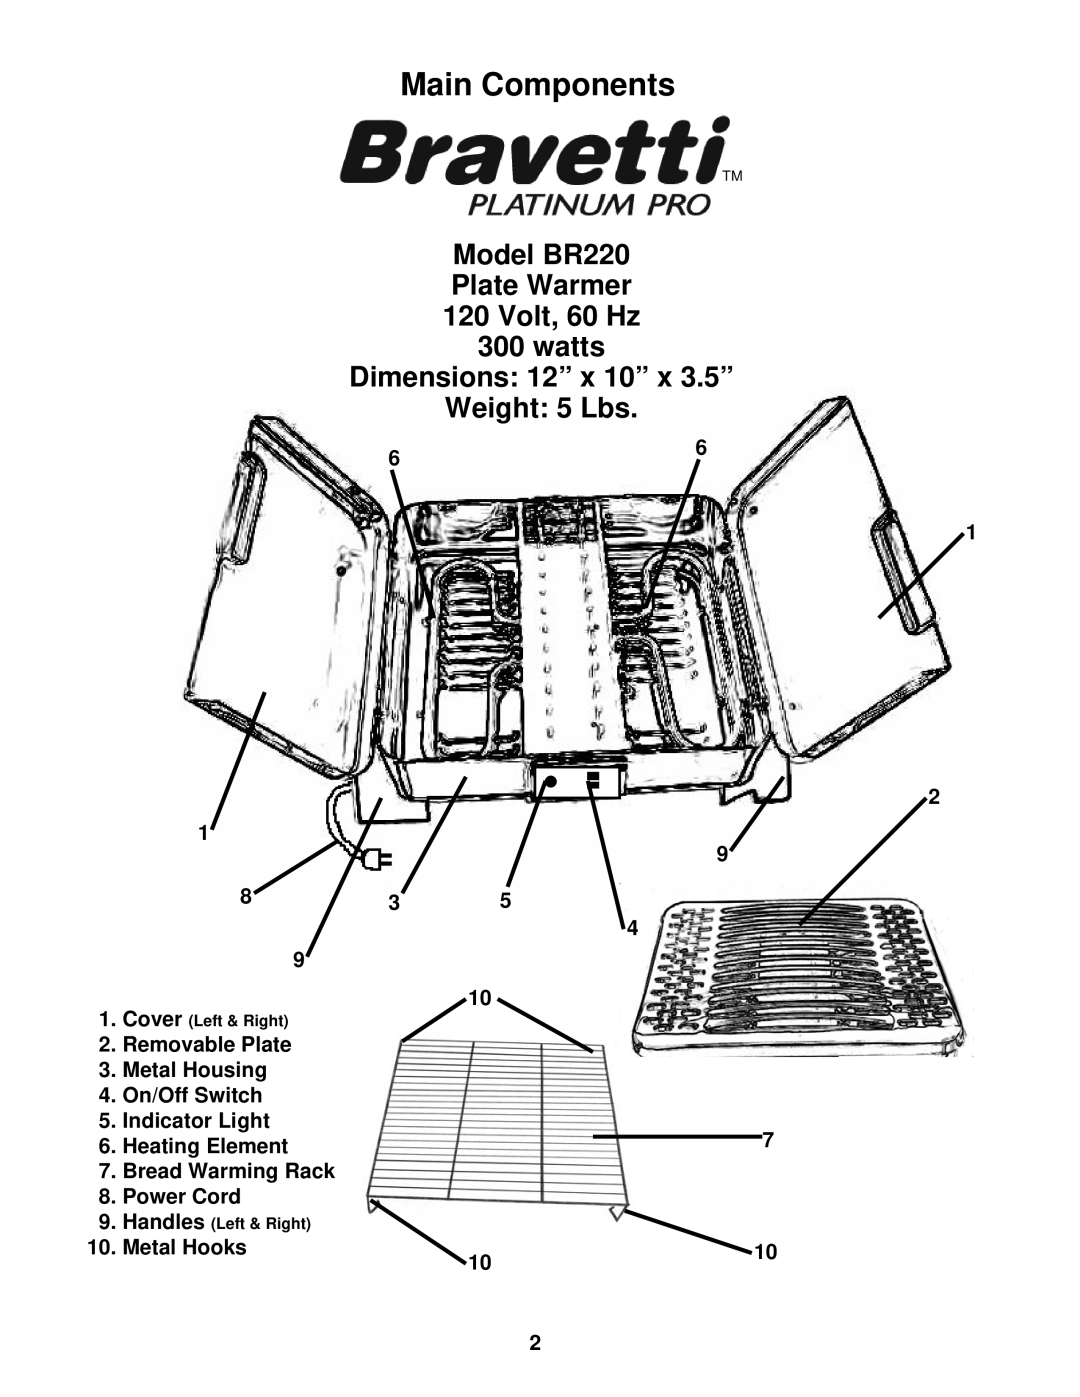 Bravetti Model BR220 Plate Warmer 120 Volt, 60 Hz 300 watts, Dimensions 12” x 10” x 3.5” Weight 5 Lbs, Power Cord, 1010 